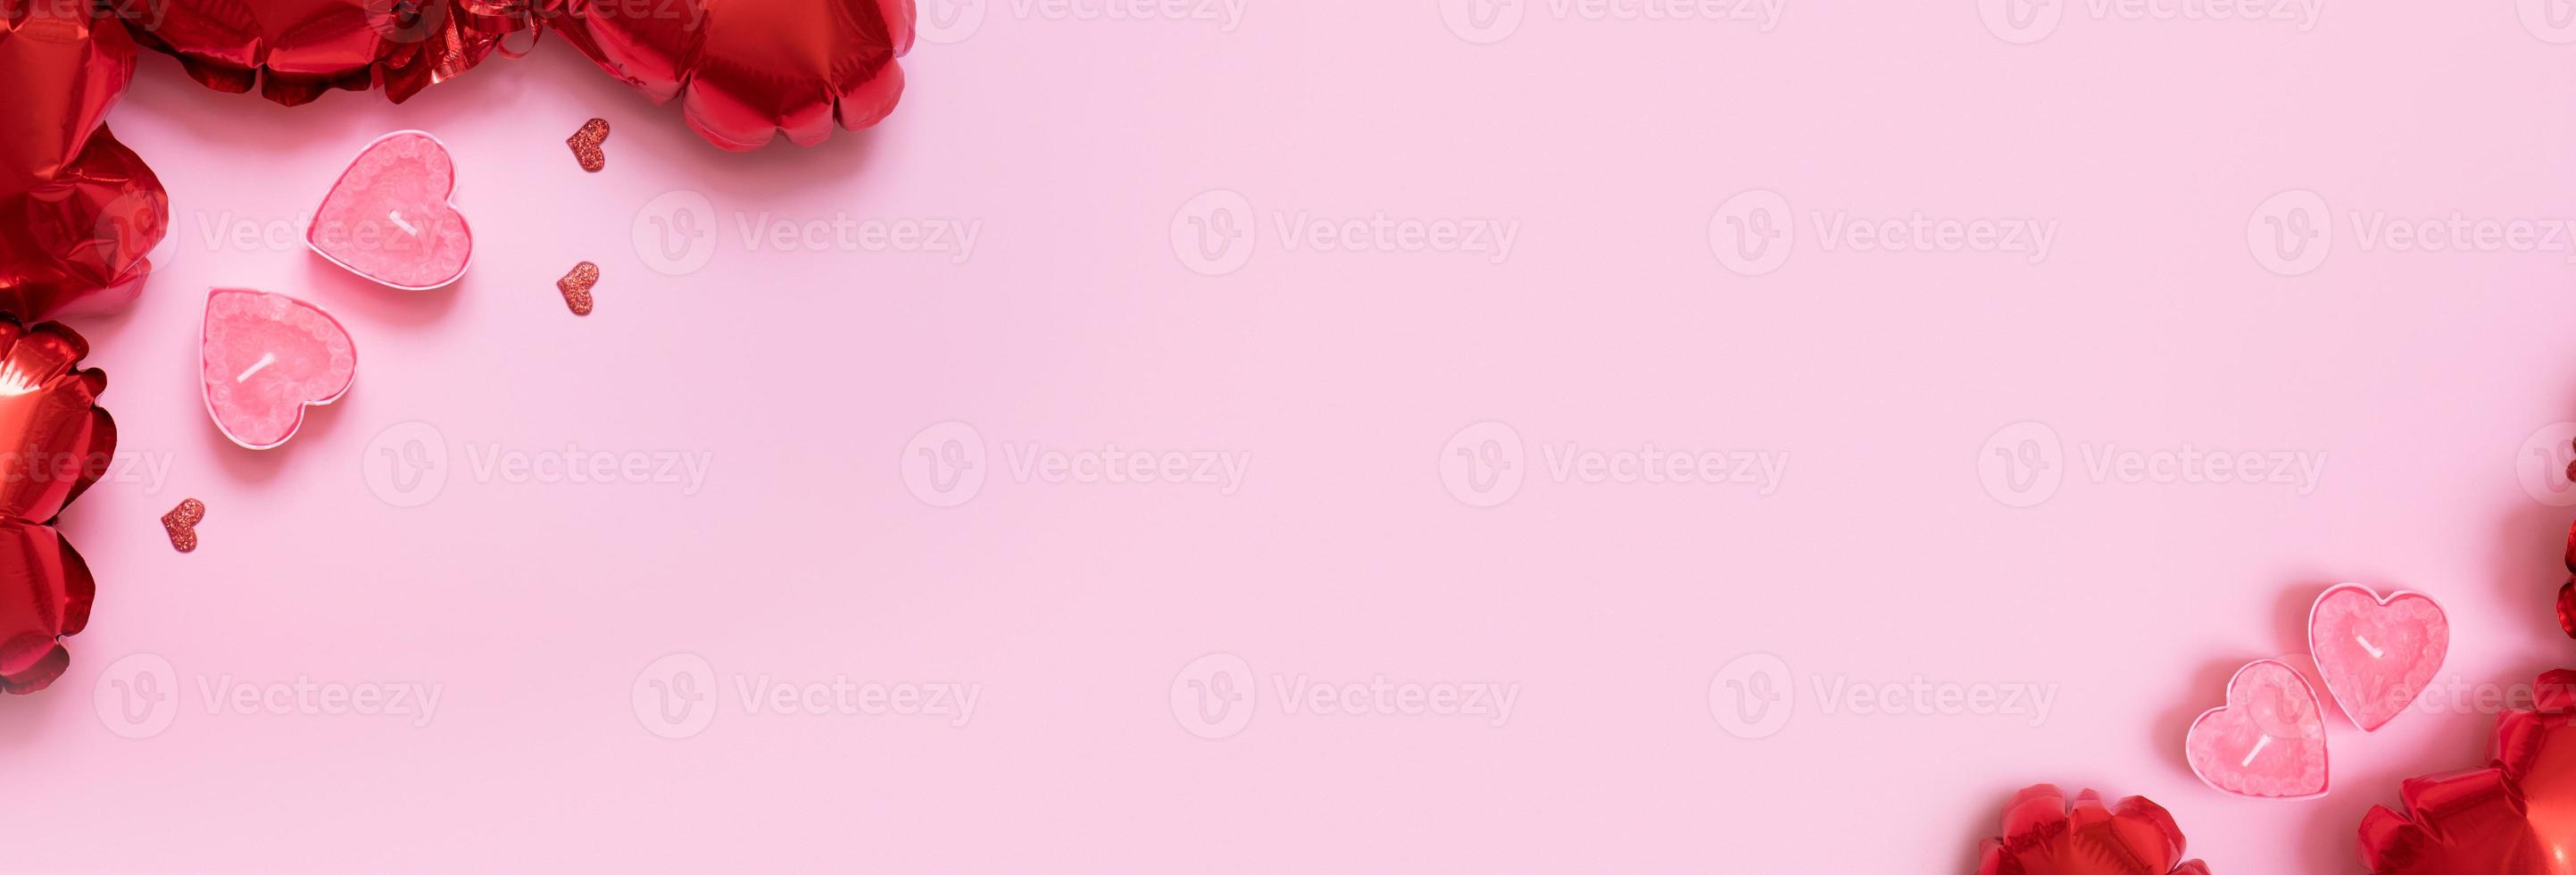 regalo scatola, candele e rosso cuore forma baloons su rosa sfondo. san valentino giorno sfondo con copia spazio foto